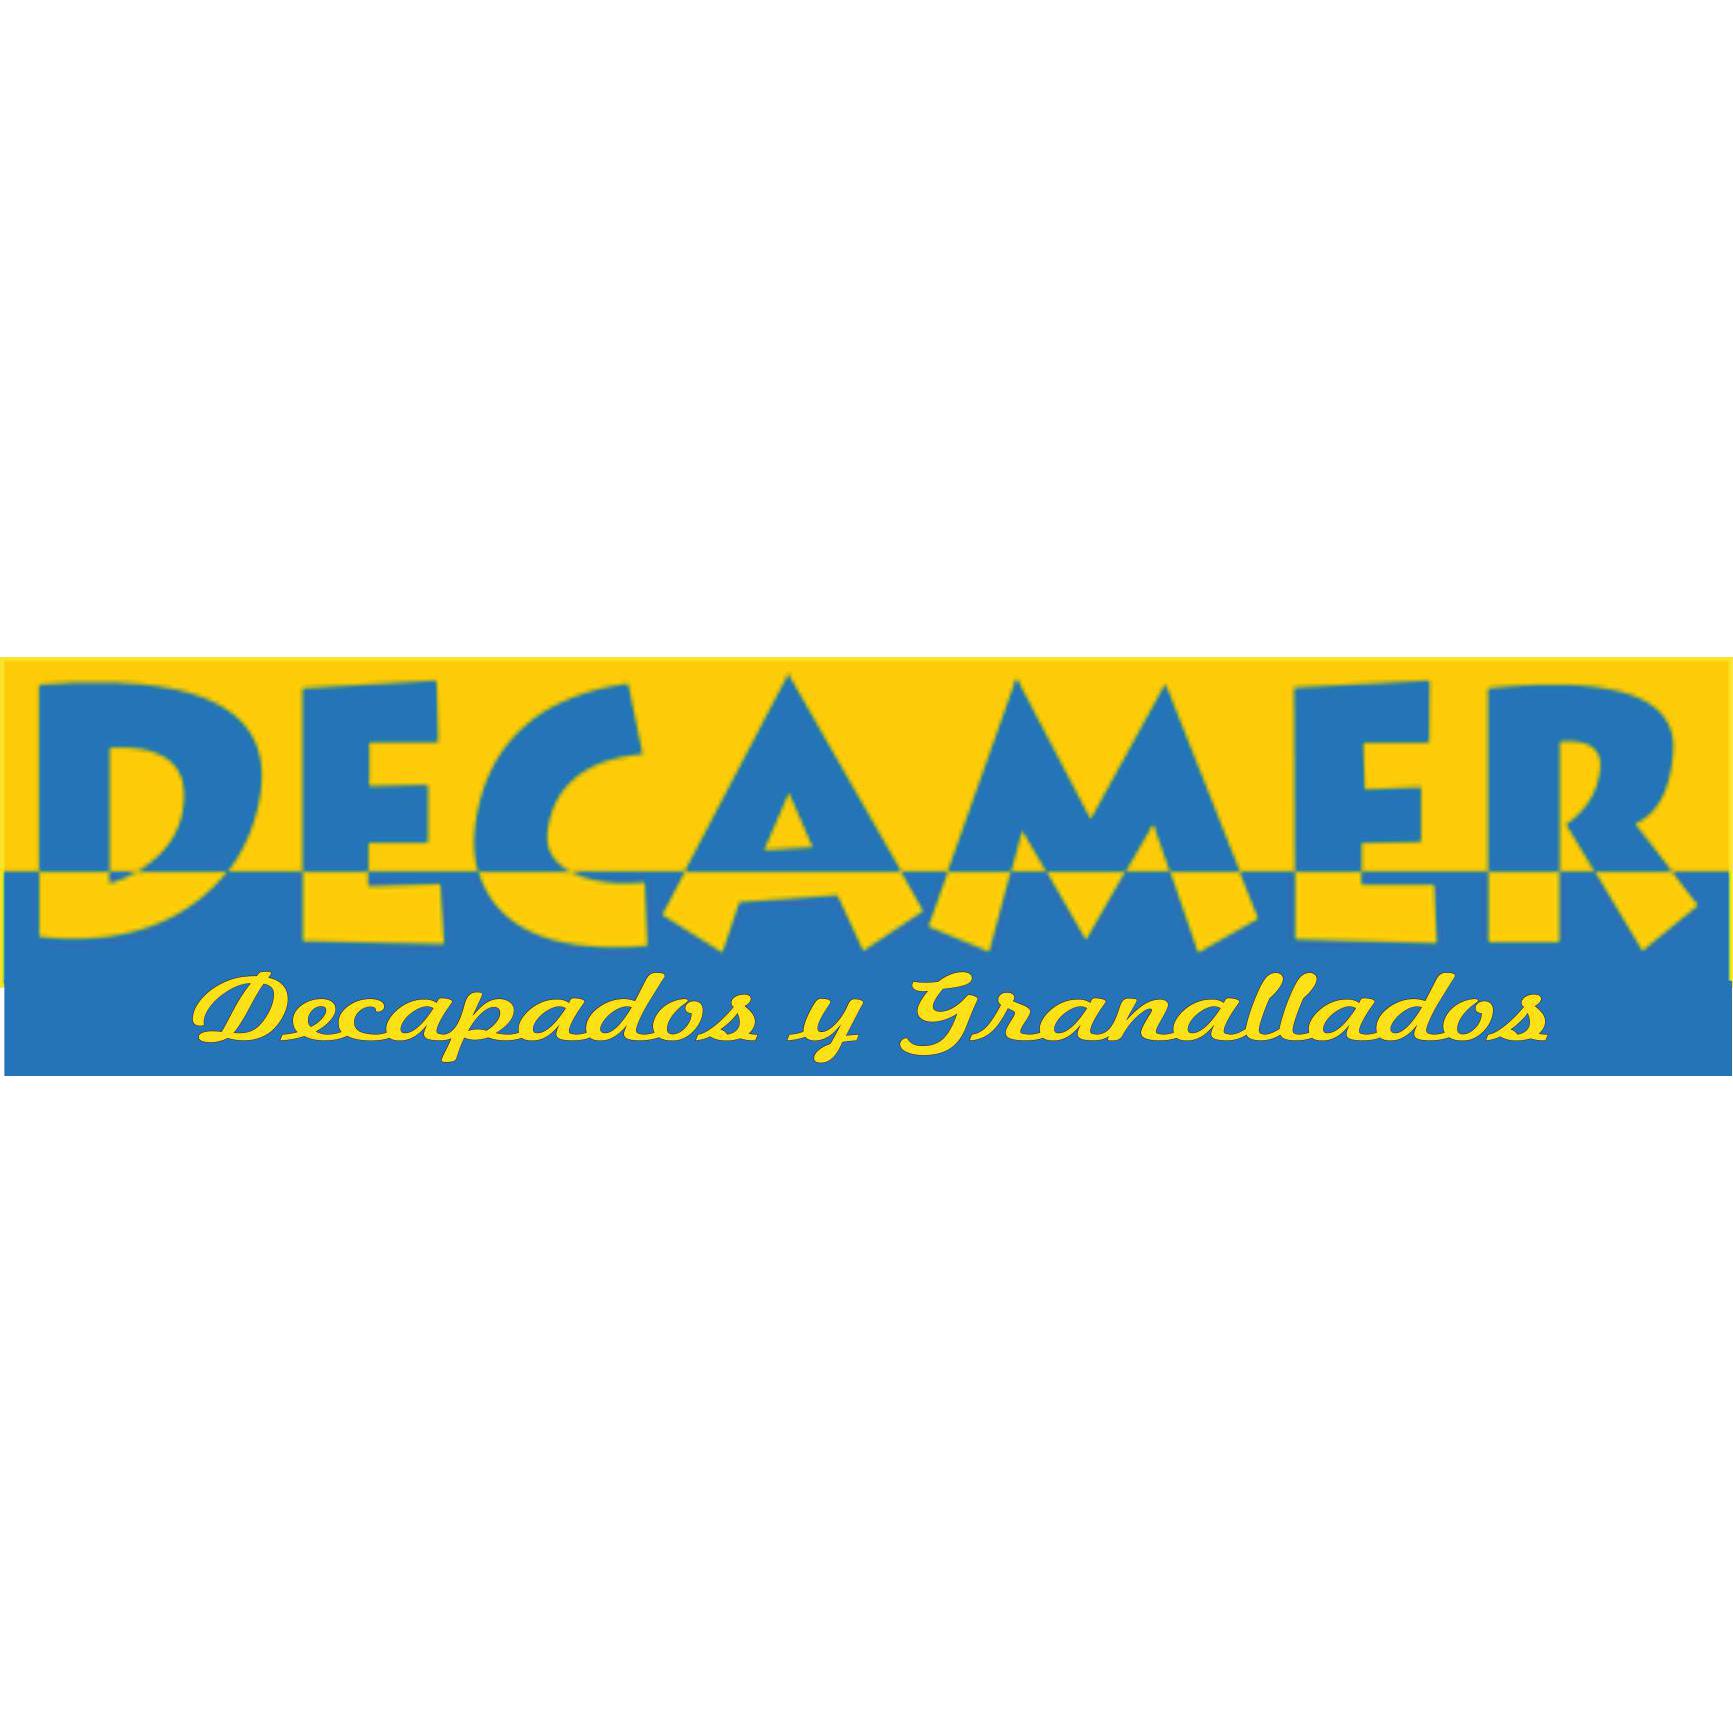 Decamer - Decapados y granallados en Valencia Logo